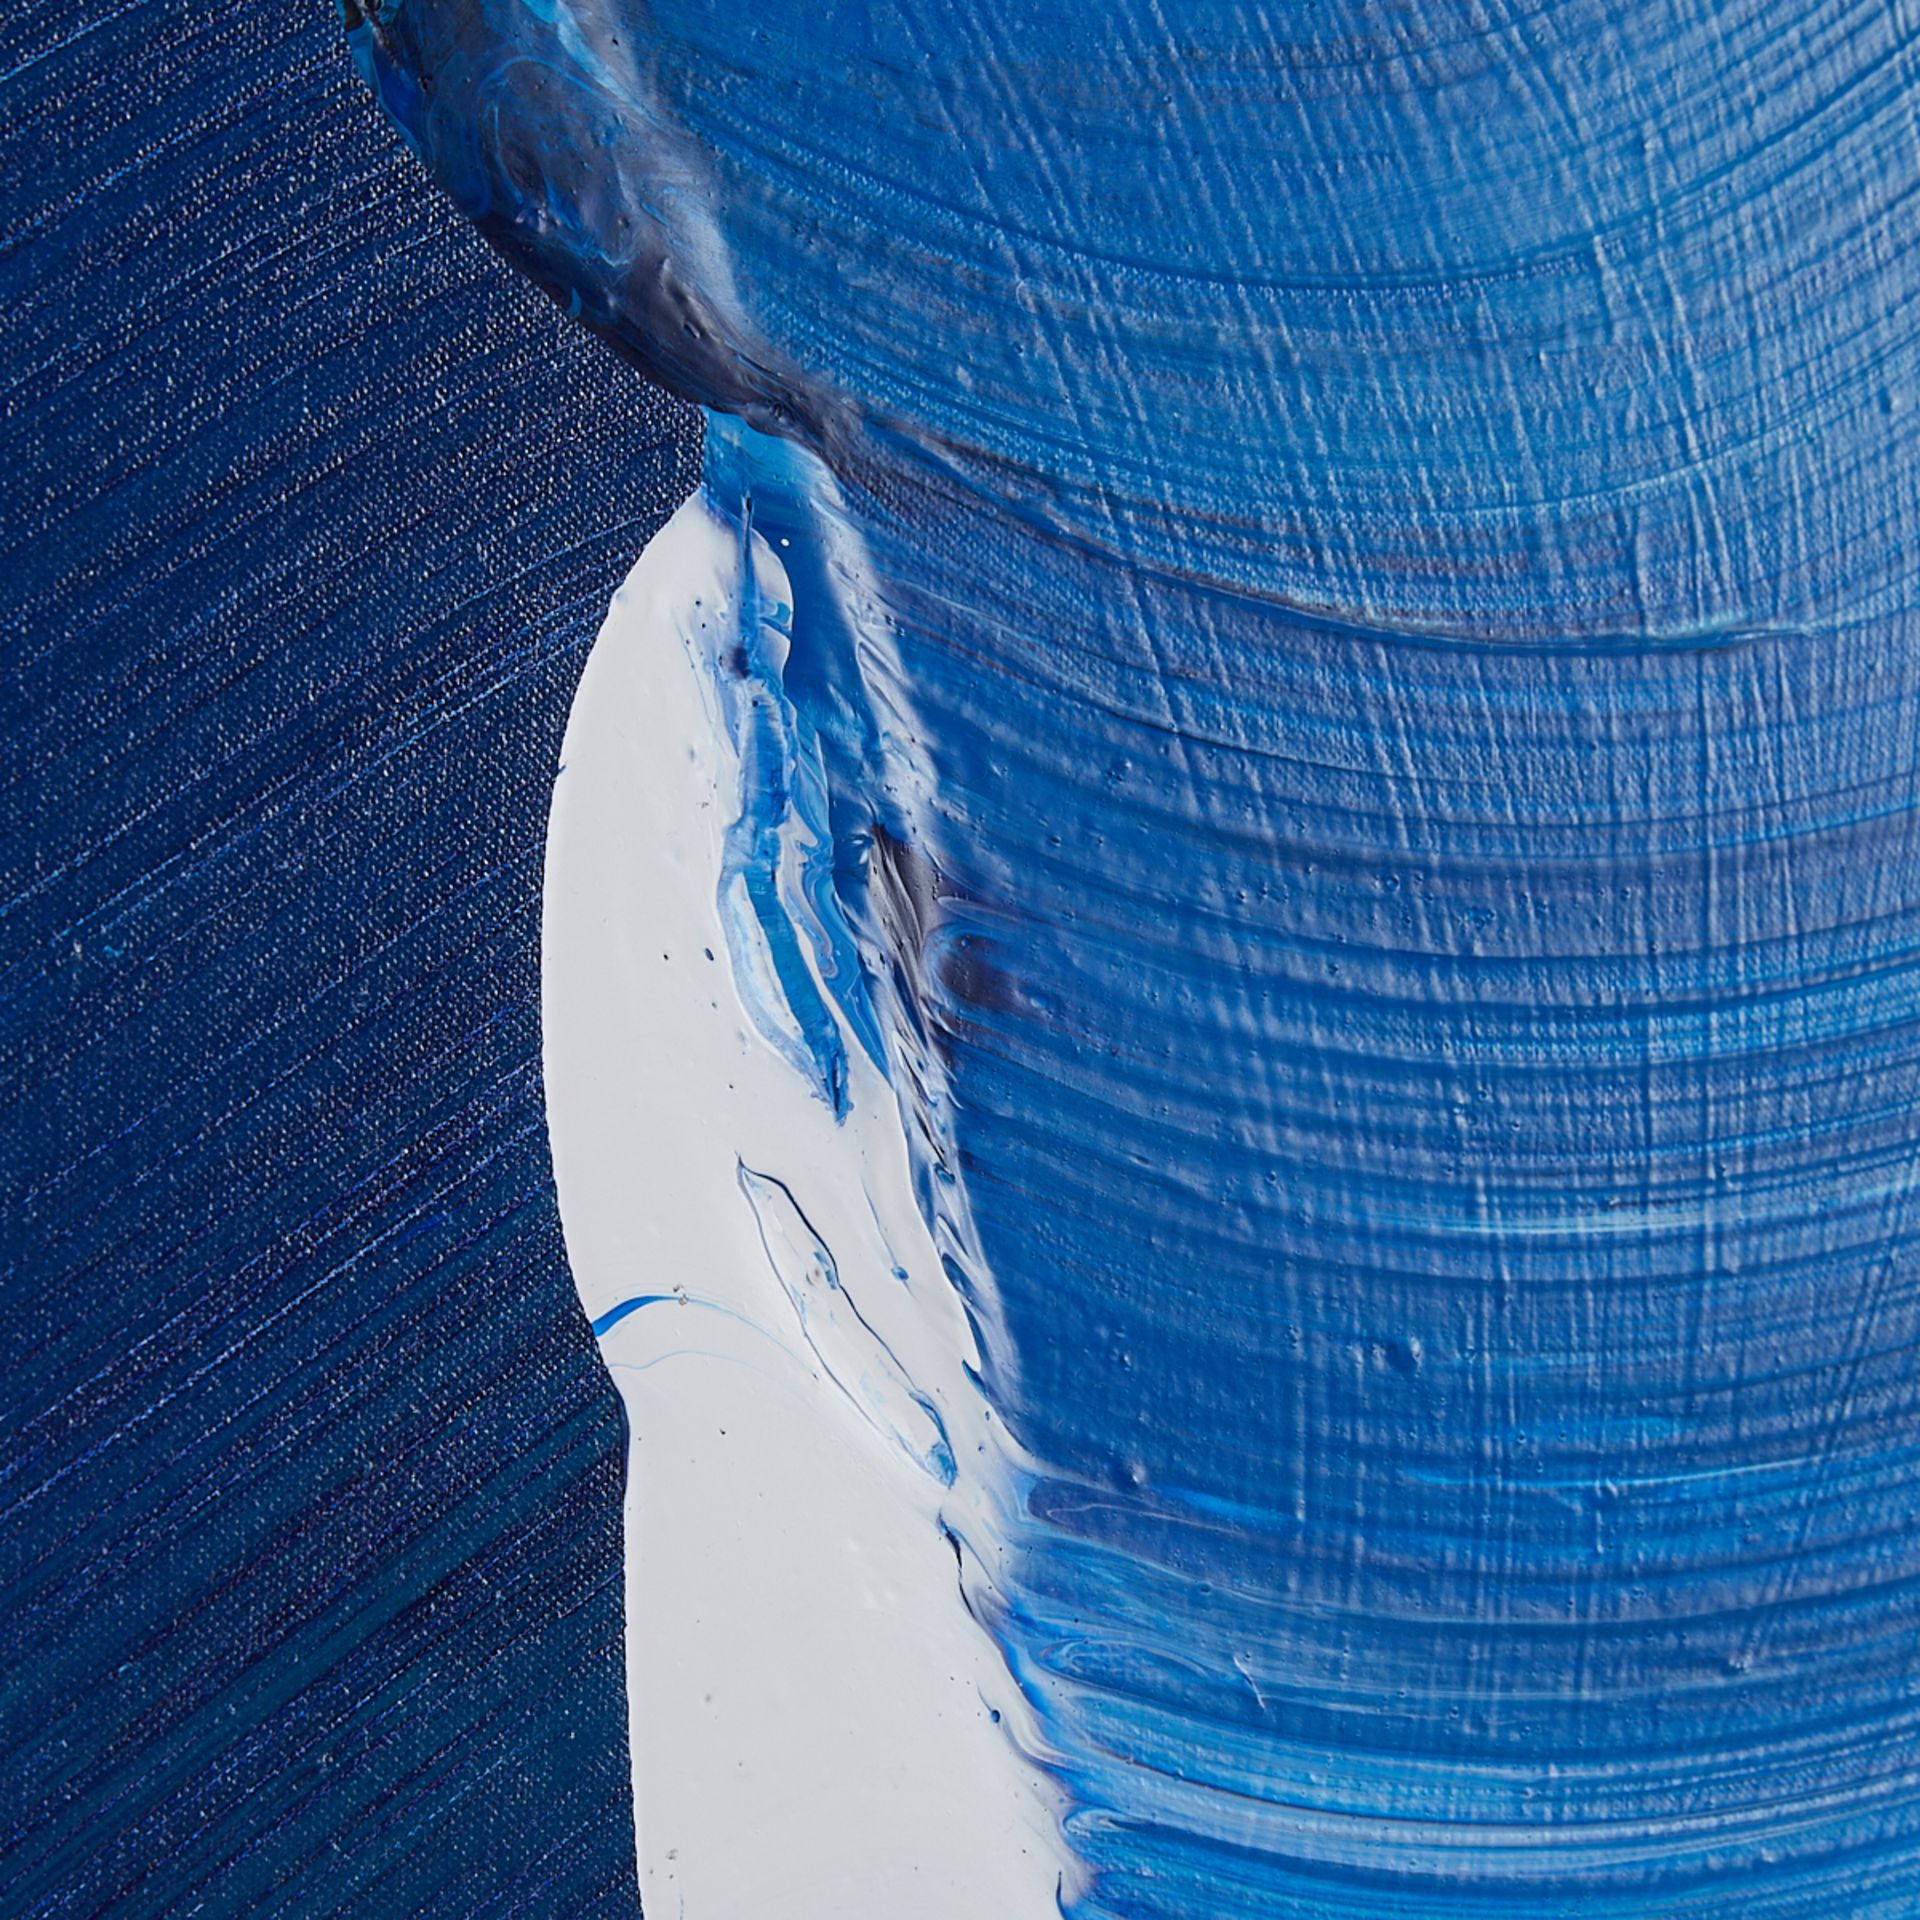 Sandi Sloane "Blue Night Wave" Mixed Media 2000 - Image 4 of 9